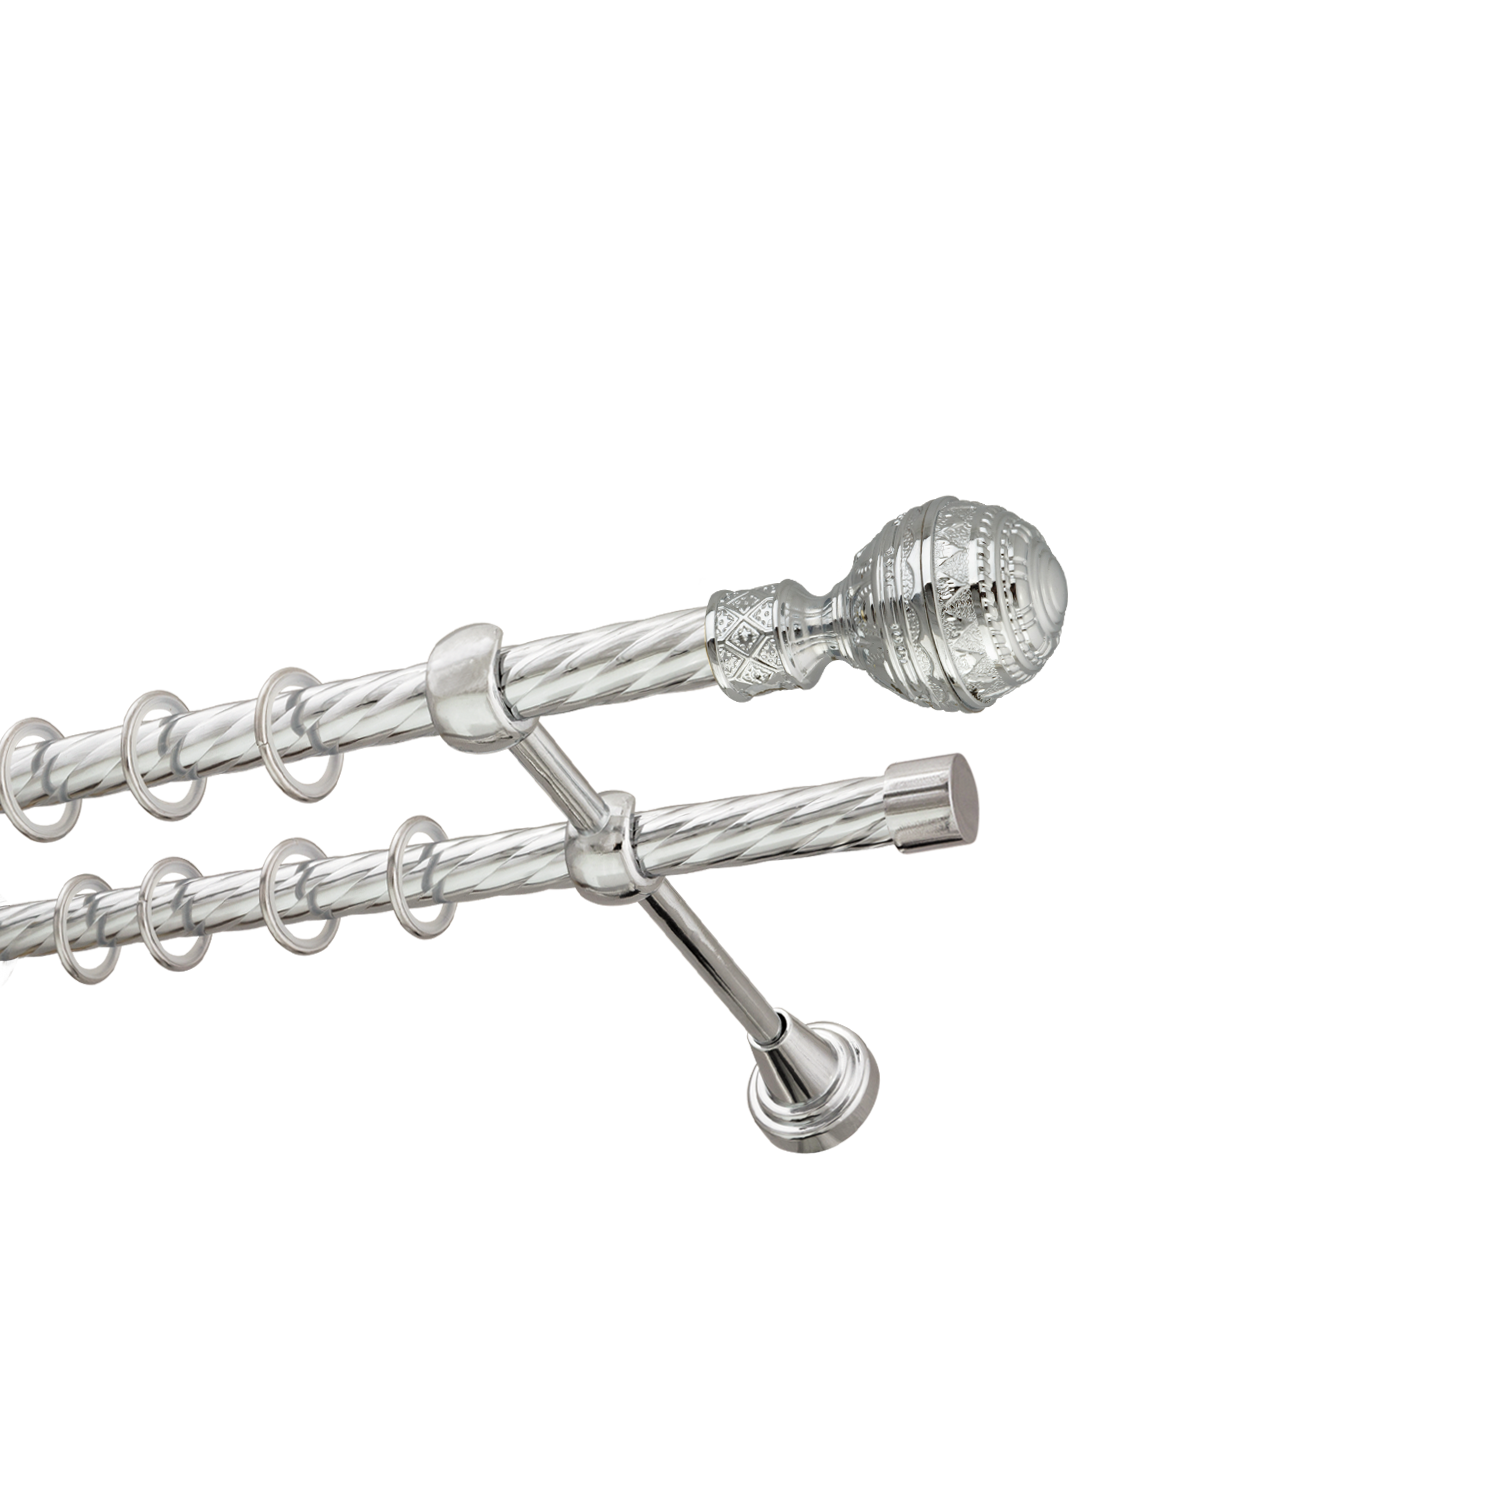 Металлический карниз для штор Роял, двухрядный 16/16 мм, серебро, витая штанга, длина 140 см